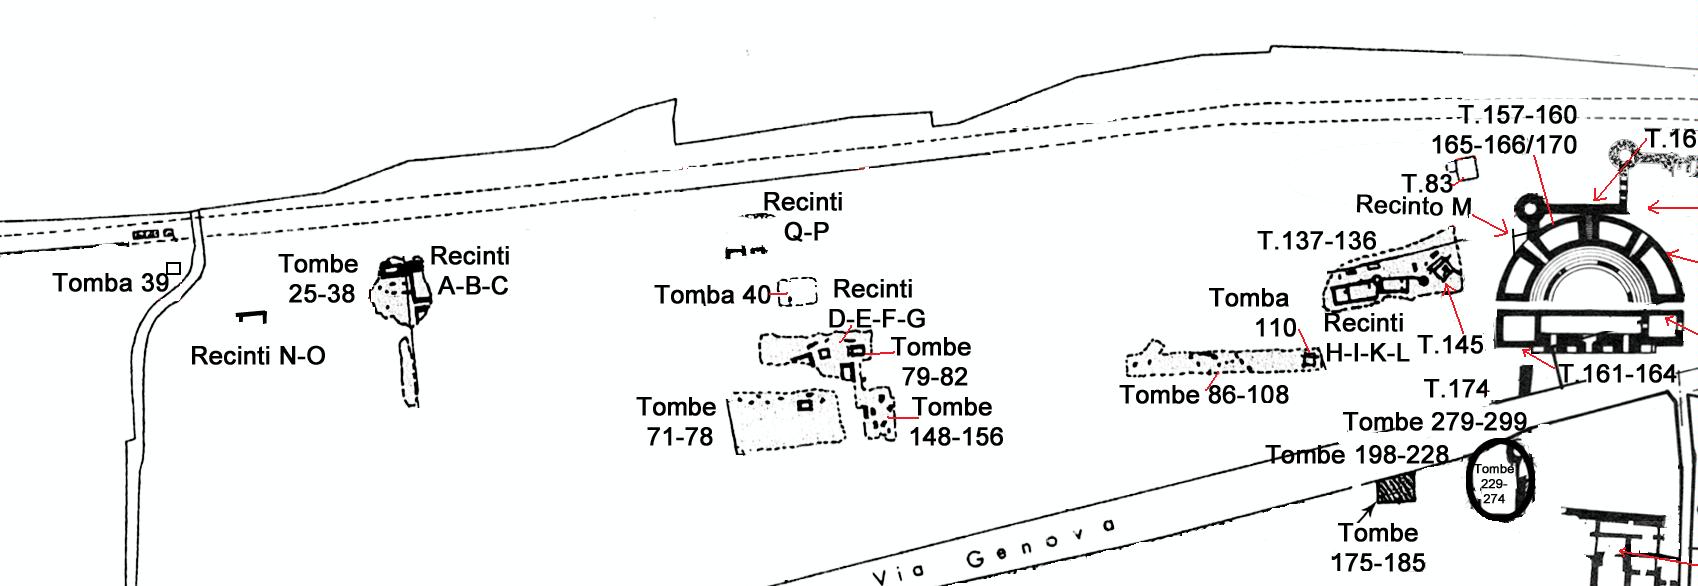 Necropoli di Albintimilium, tomba 145 (monumento funerario, area ad uso funerario) - Ventimiglia (IM)  (prima metà Età romana imperiale)